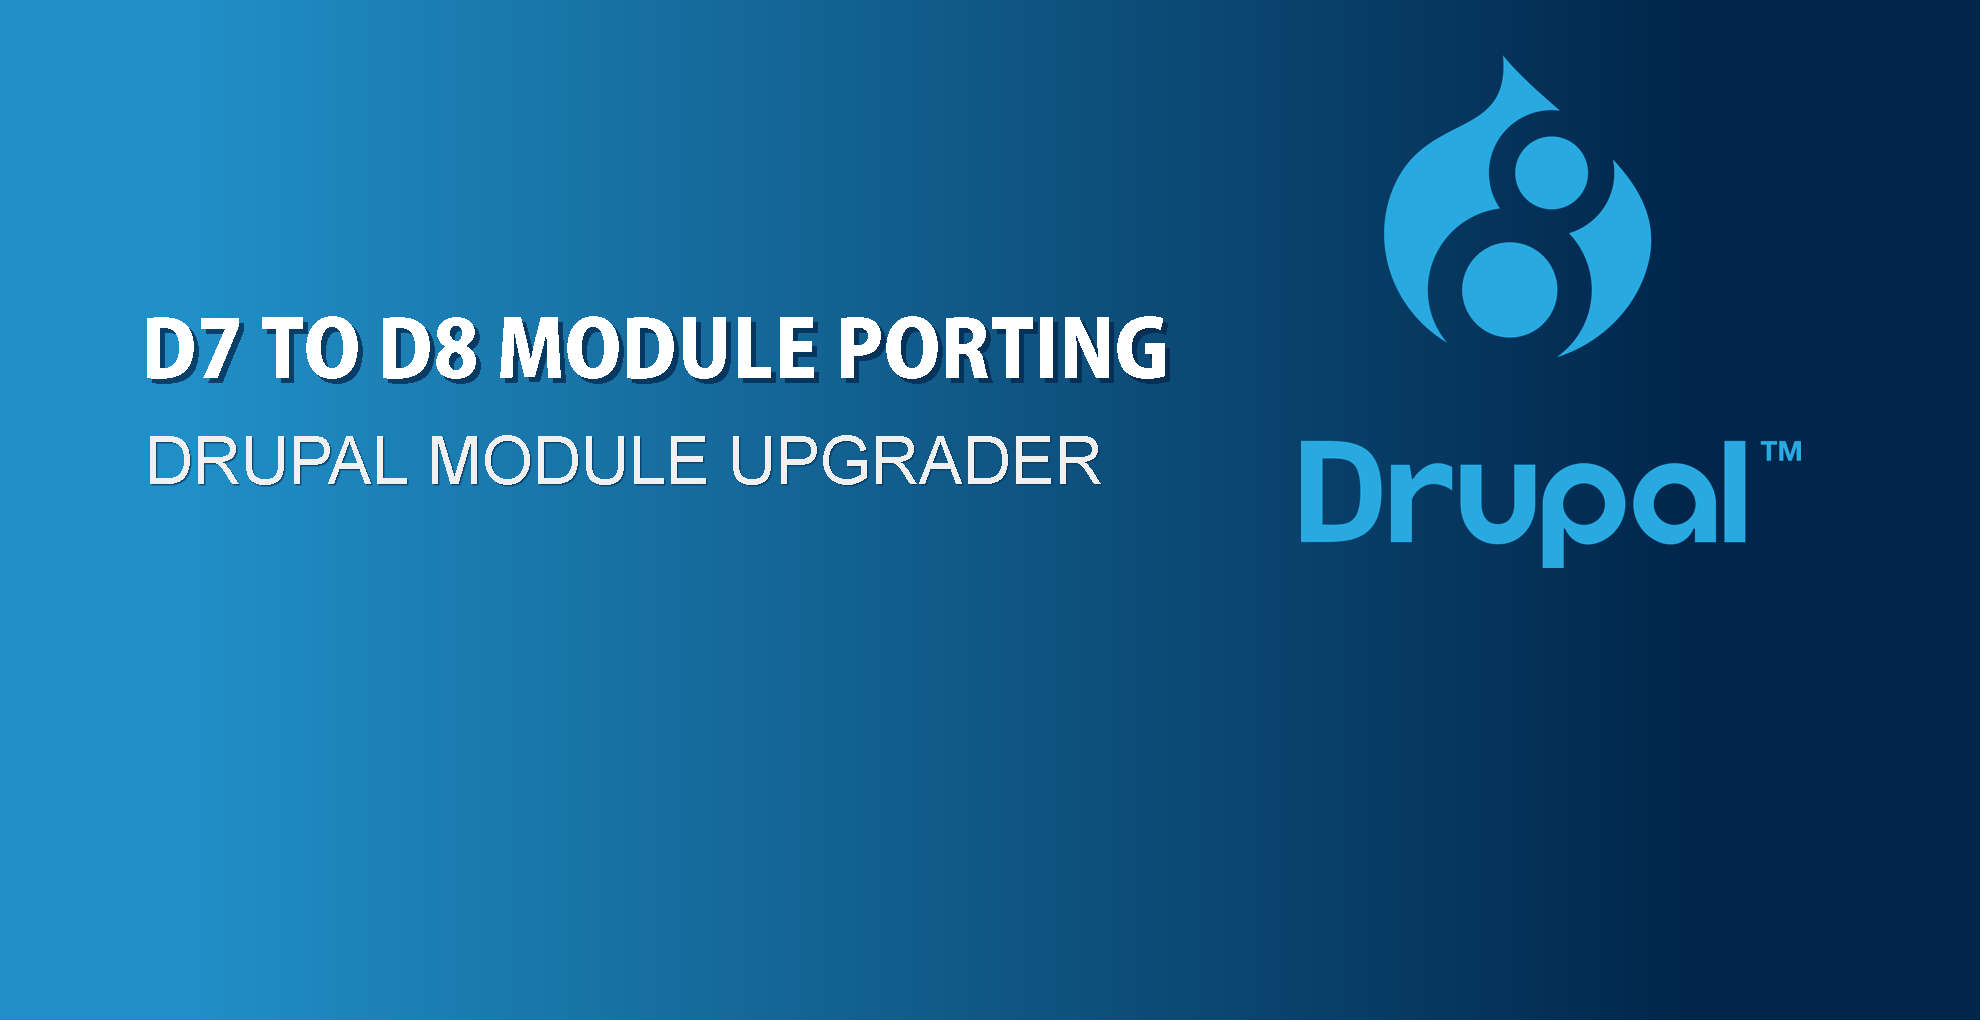 Drupal Module Upgrader